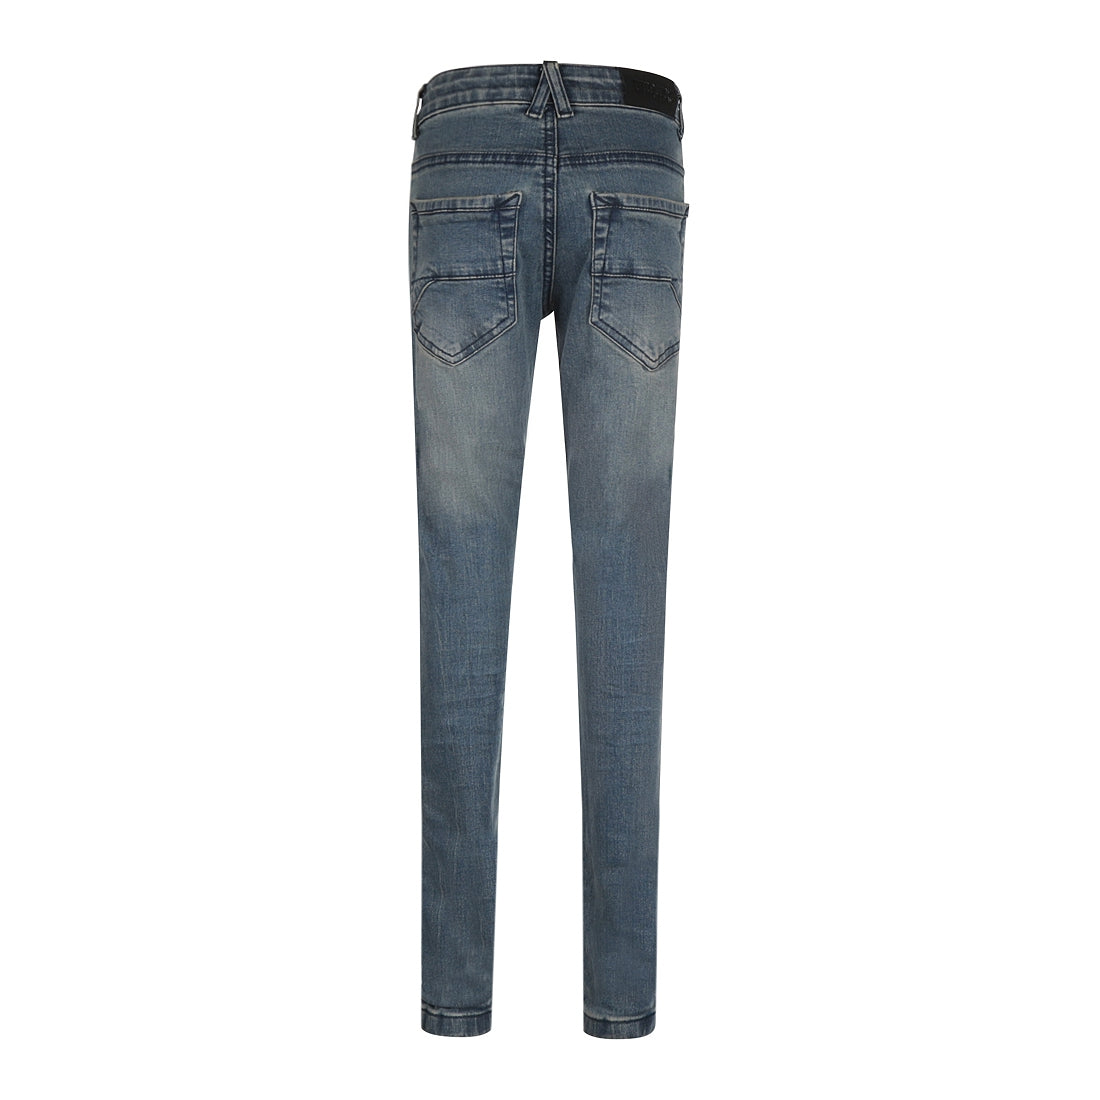 Jongens Jeans Skinny van No Way Monday in de kleur Blue jeans in maat 164.